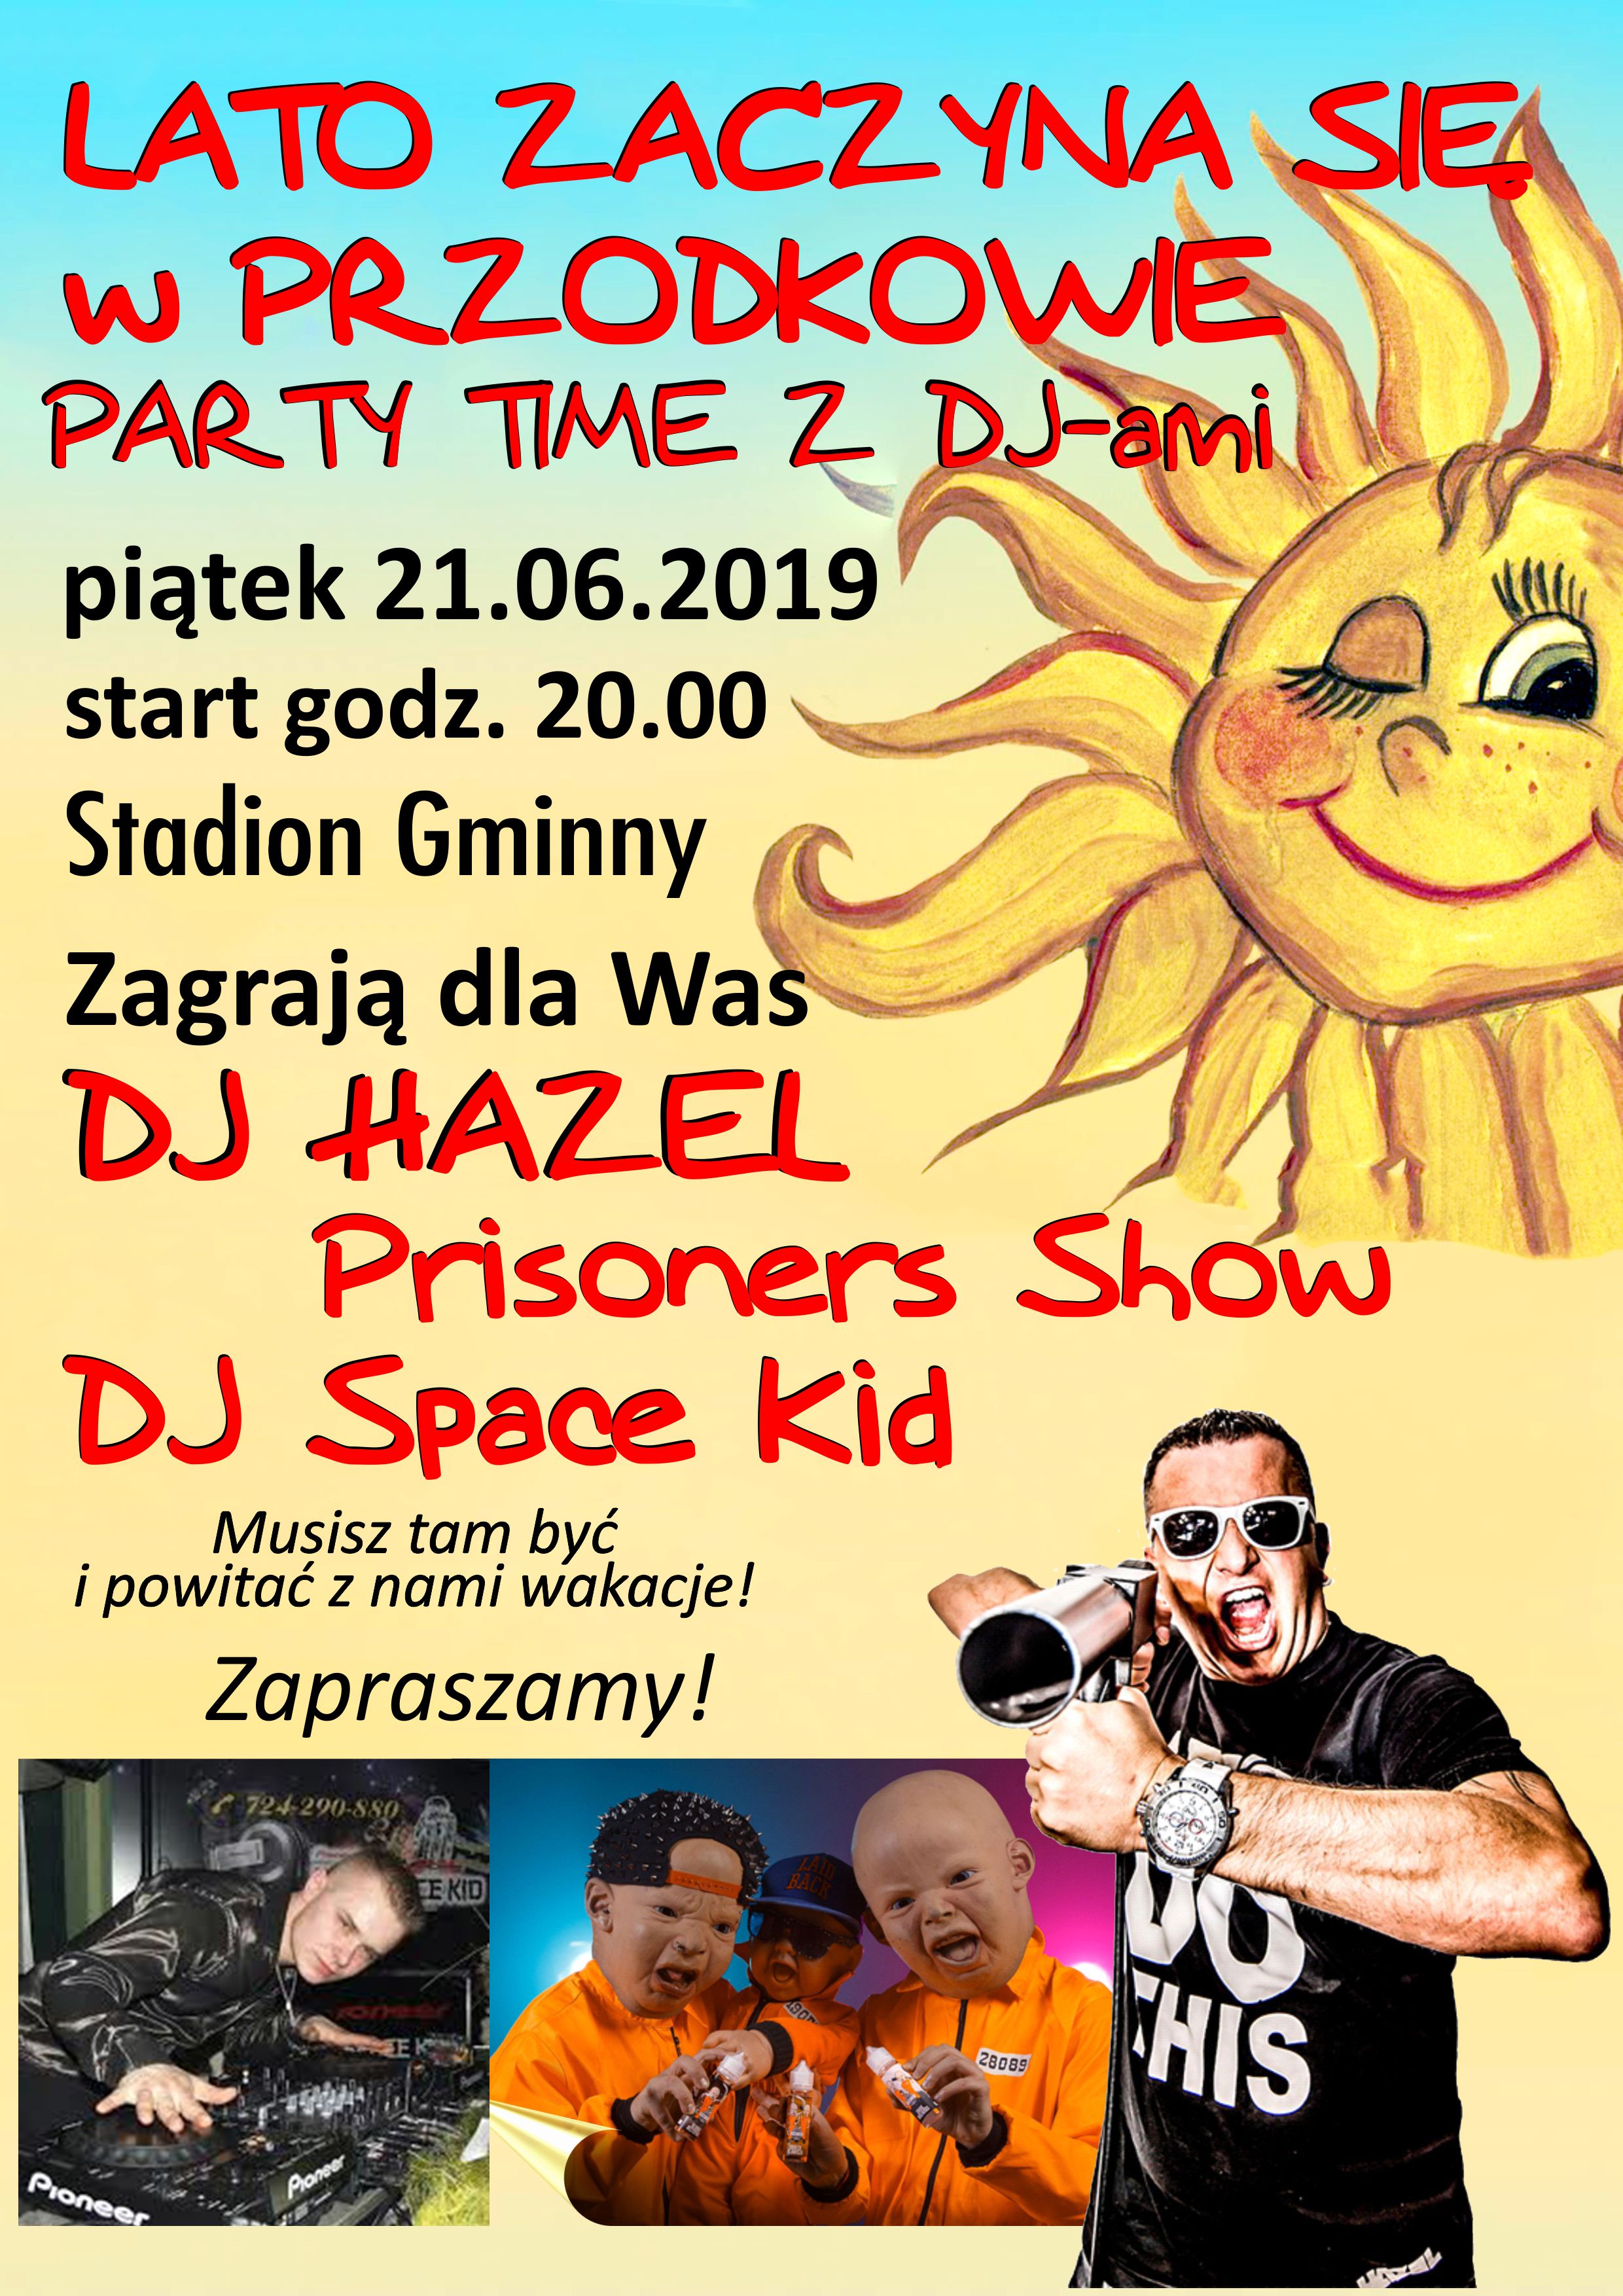 Lato zaczyna się w Przodkowie! - Party Time z DJ-ami